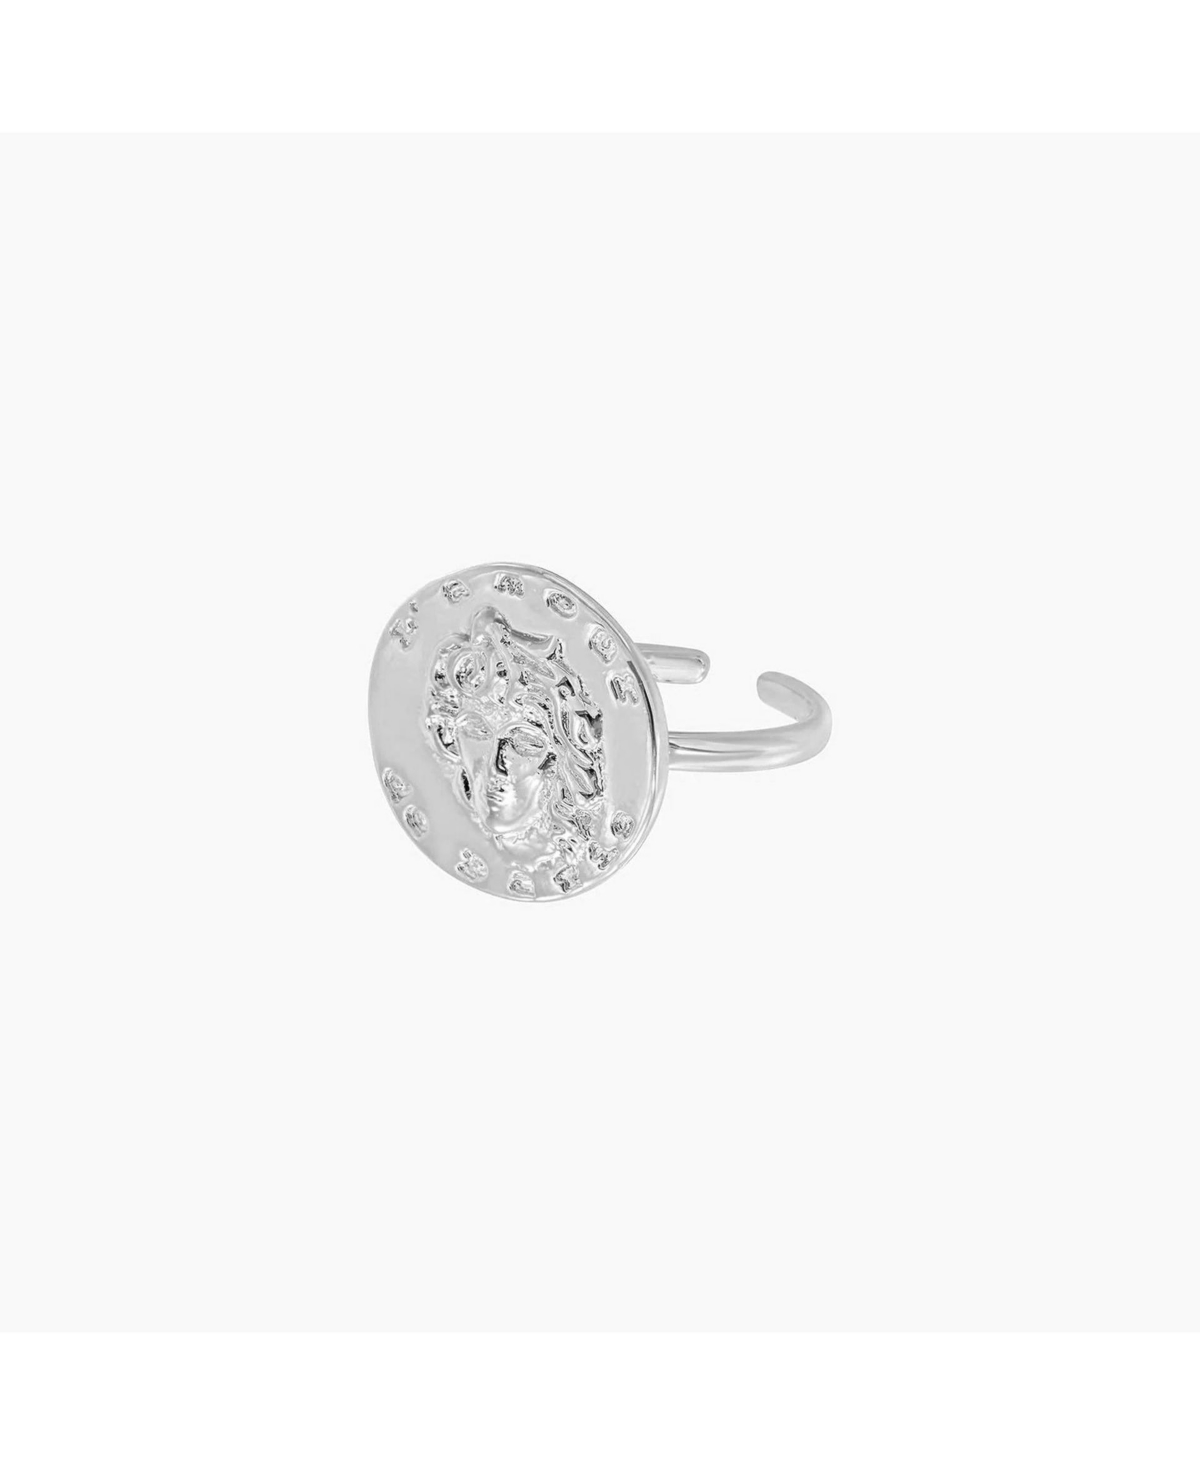 Maya Coin Adjustable Ring - Silver